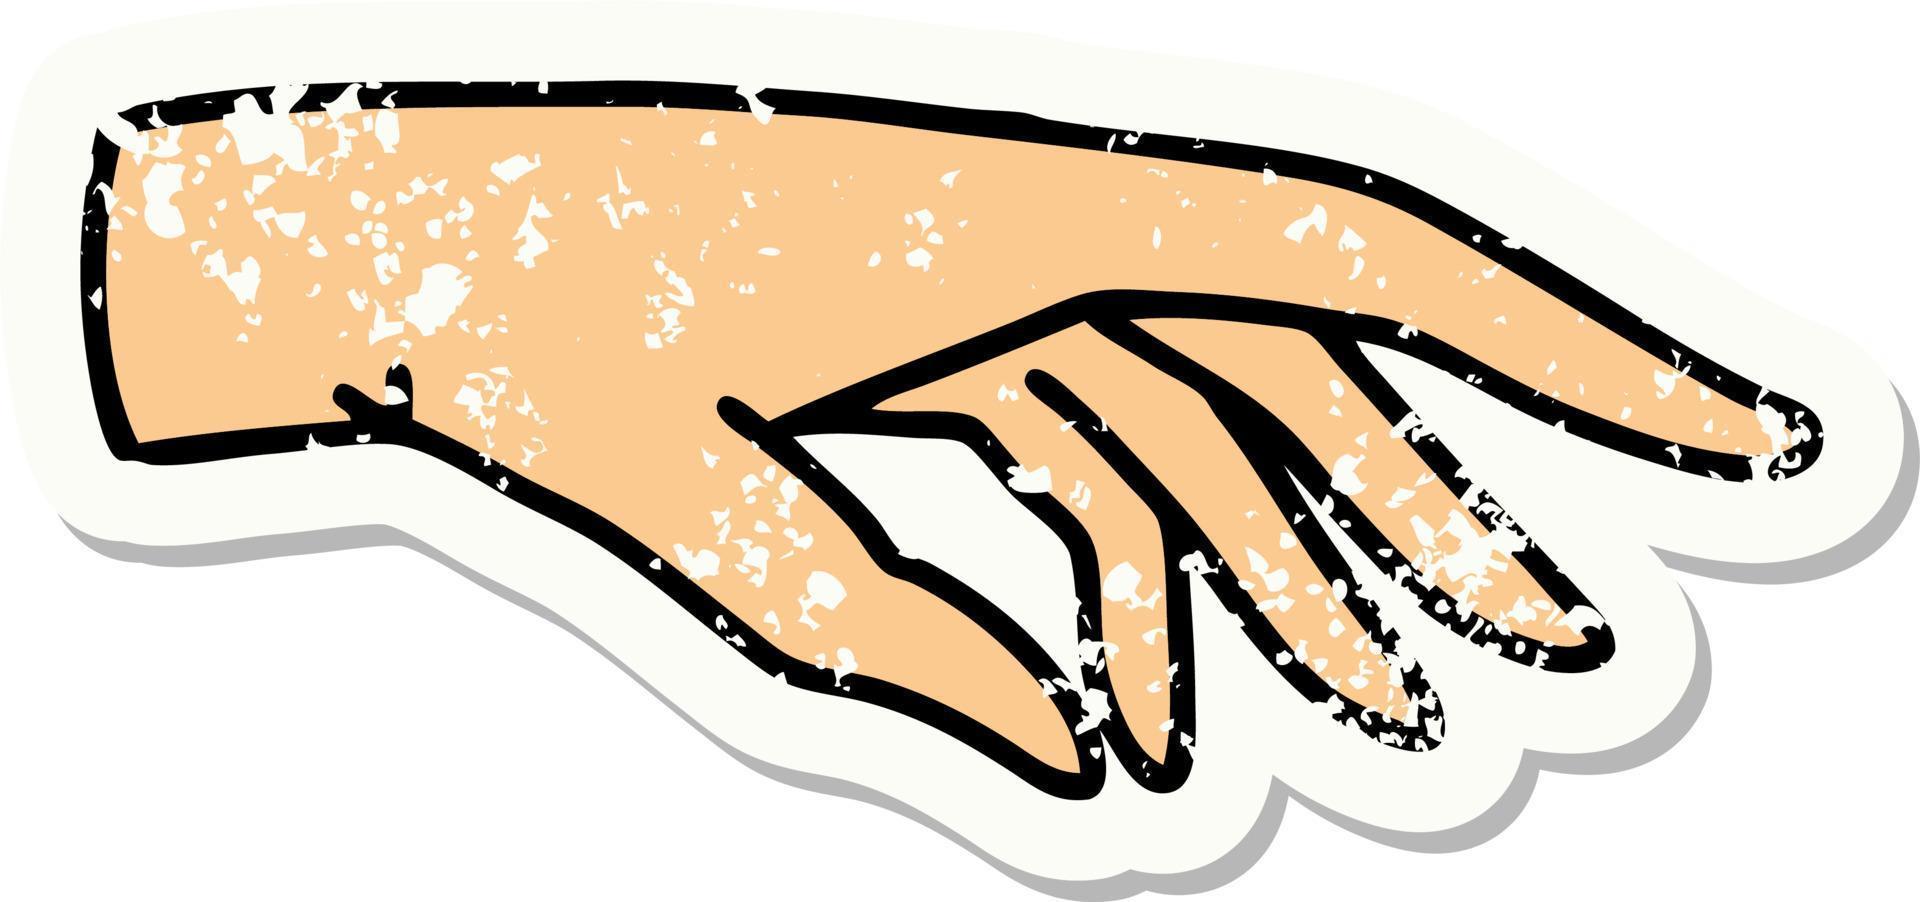 bedrövad klistermärke tatuering i traditionell stil av en hand vektor